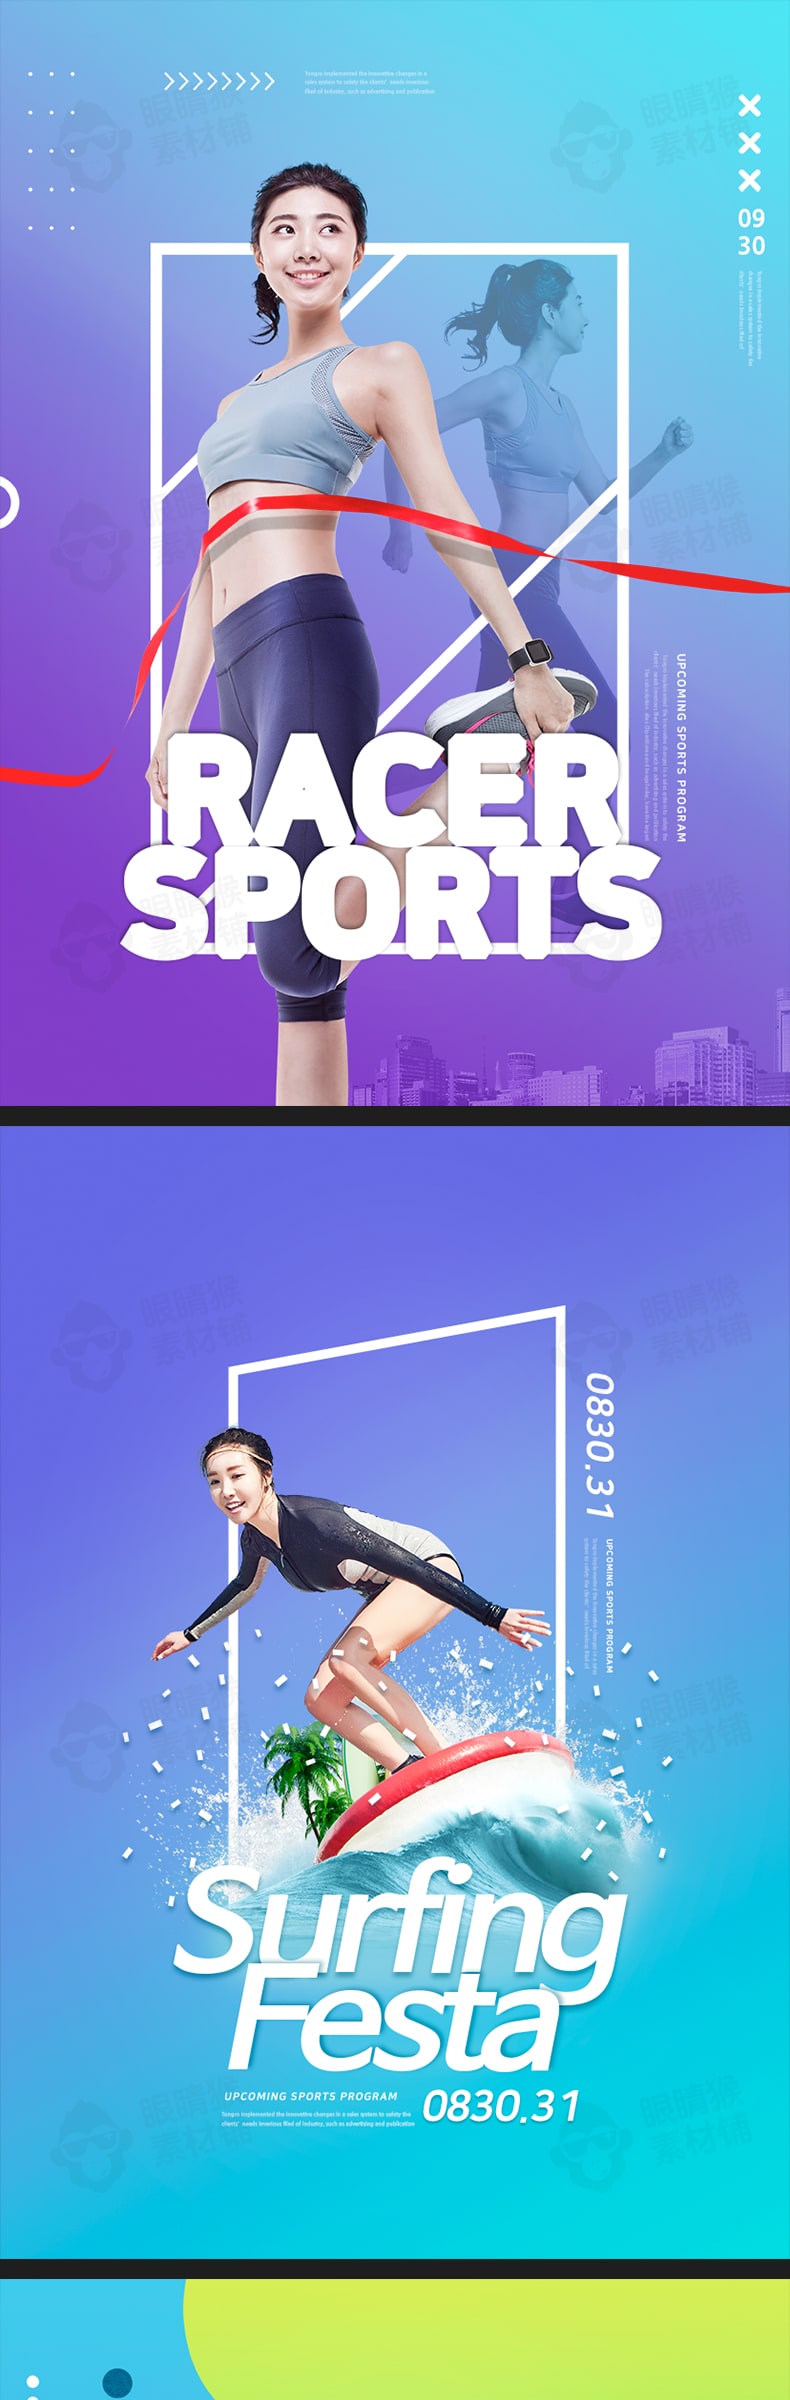 体育运动跑步足球网球冲浪高尔夫创意海报PSD设计素材-海报素材-到位啦UI